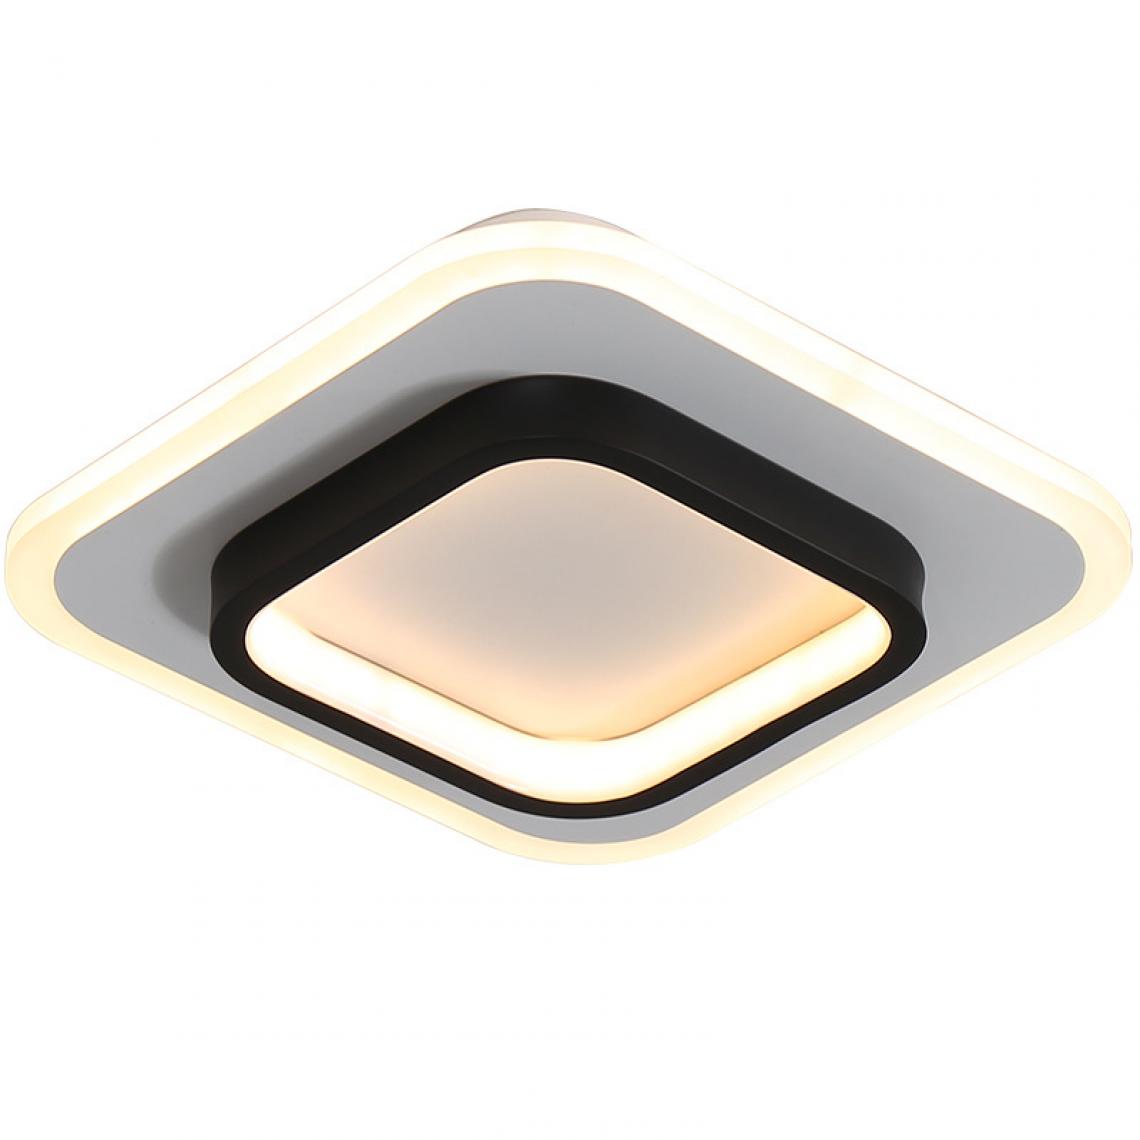 Universal - Lampe de plafond moderne à LED pour allée Homepage Eclairage LED Surface Installation Chambre Salon Couloir Lampe Soleil |(Le noir) - Plafonniers